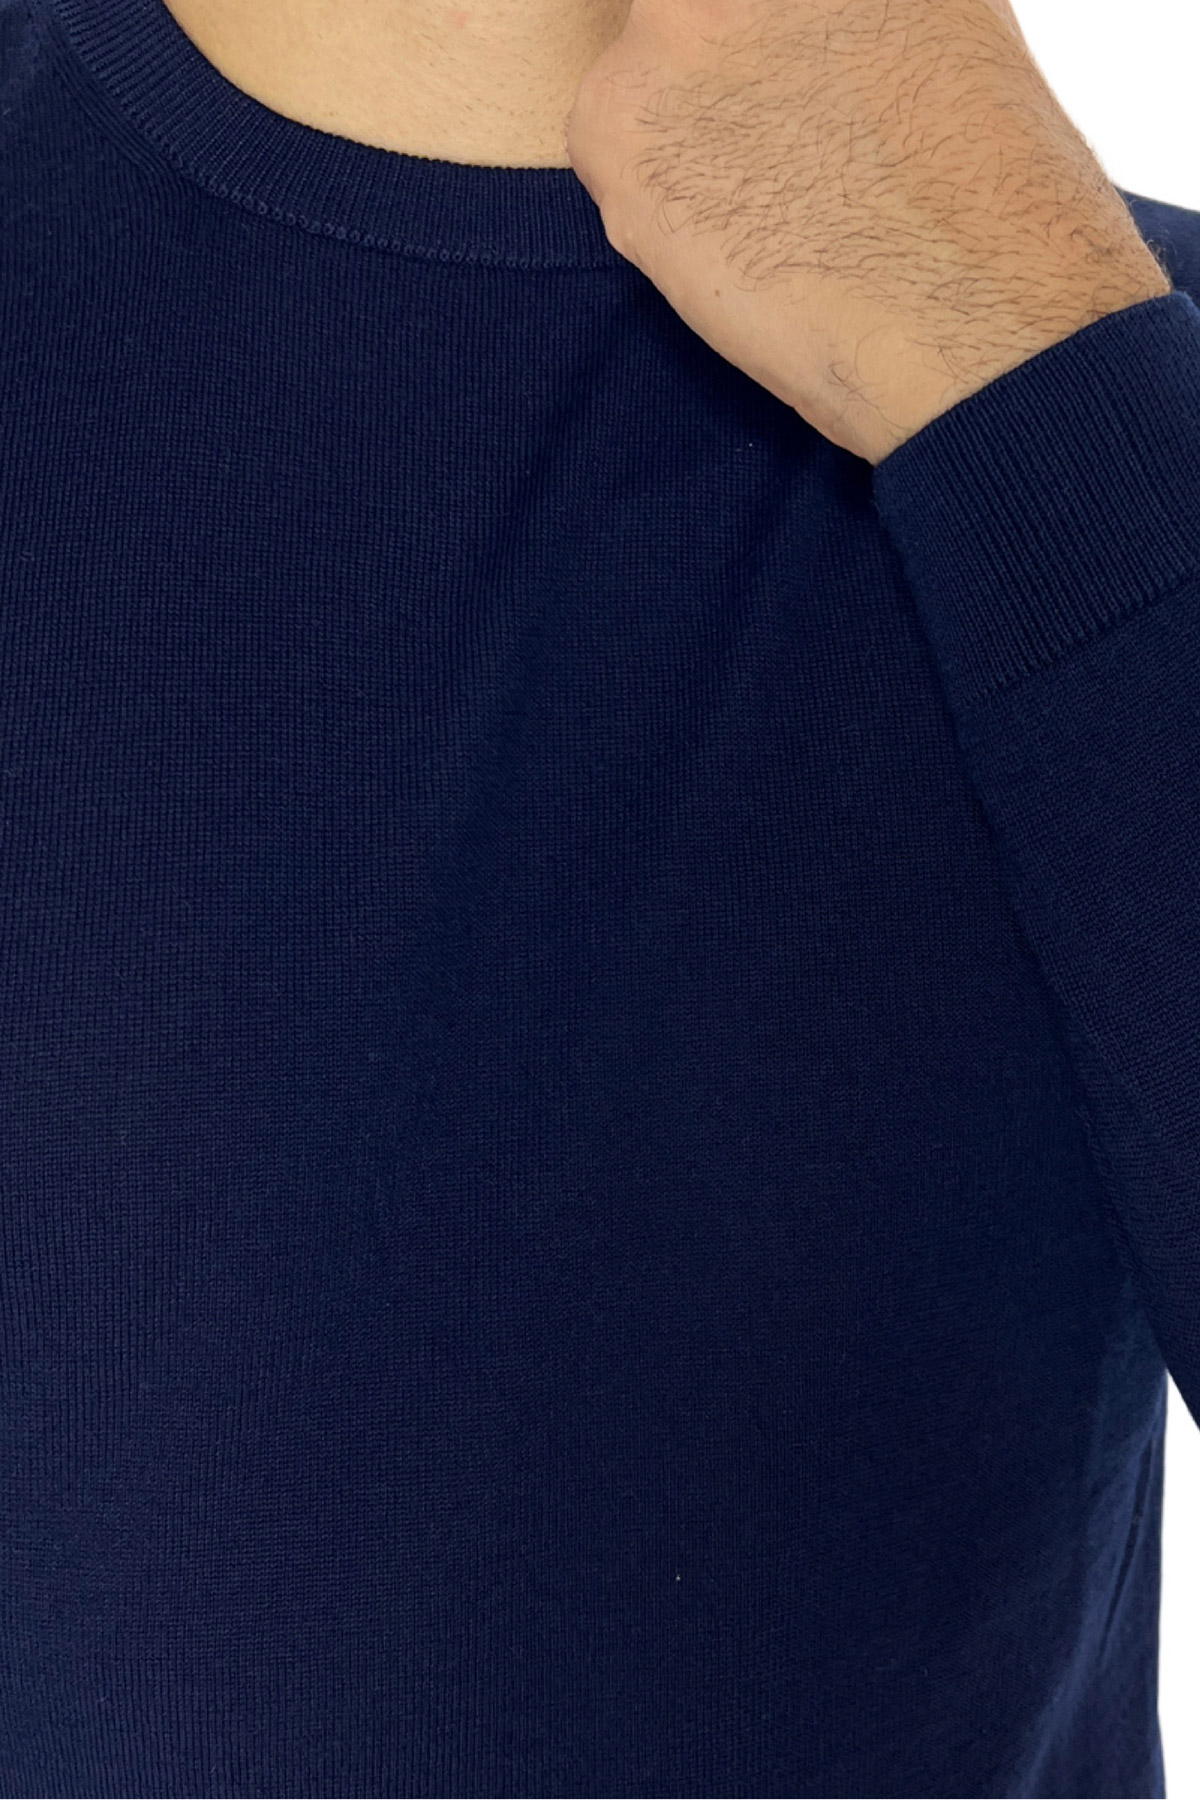 Maglioncino da uomo girocollo blu in lana merinos slim fit made in italy tinta unita